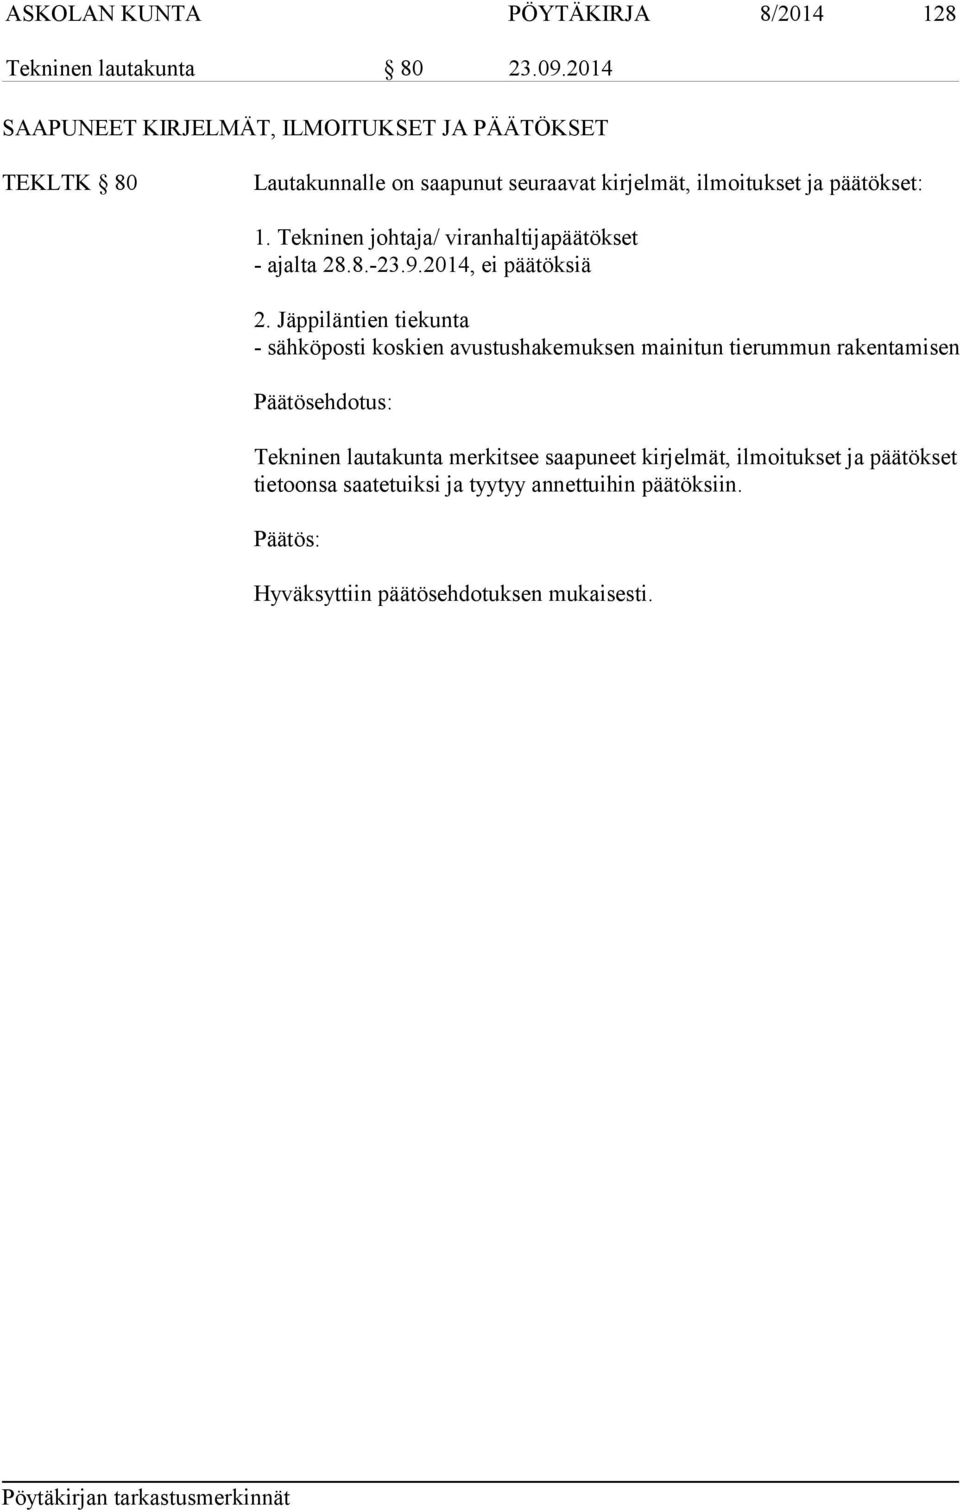 set: 1. Tekninen johtaja/ viranhaltijapäätökset - ajalta 28.8.-23.9.2014, ei päätöksiä 2.